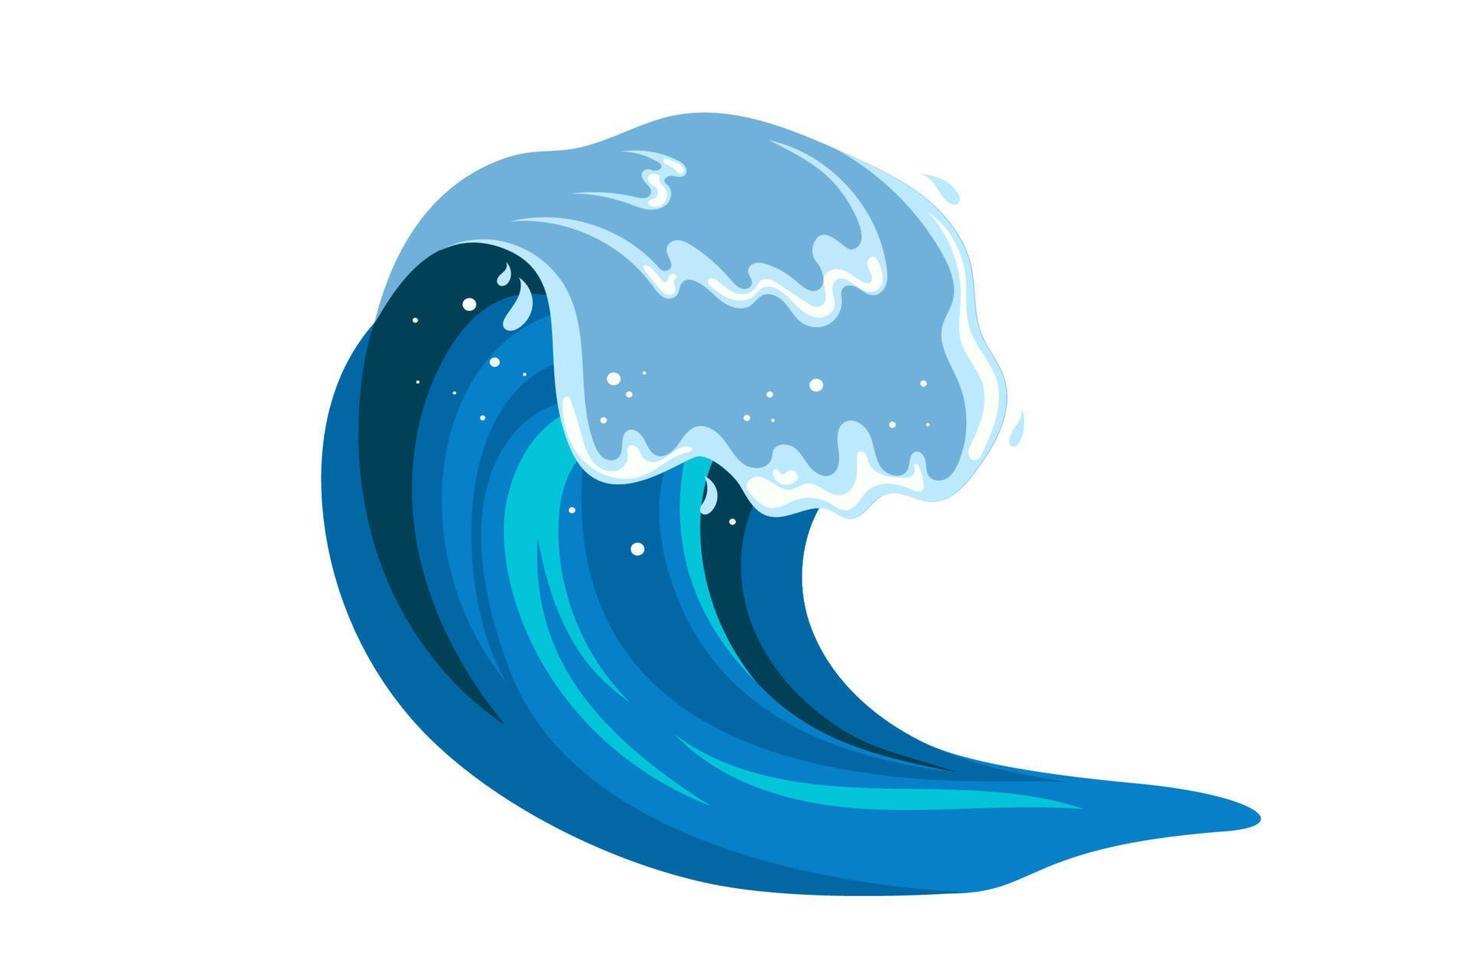 tsumani Vinka i platt tecknad serie stil. stor blå tropisk vatten stänk med vit skum. vektor illustration isolerat i vit bakgrund